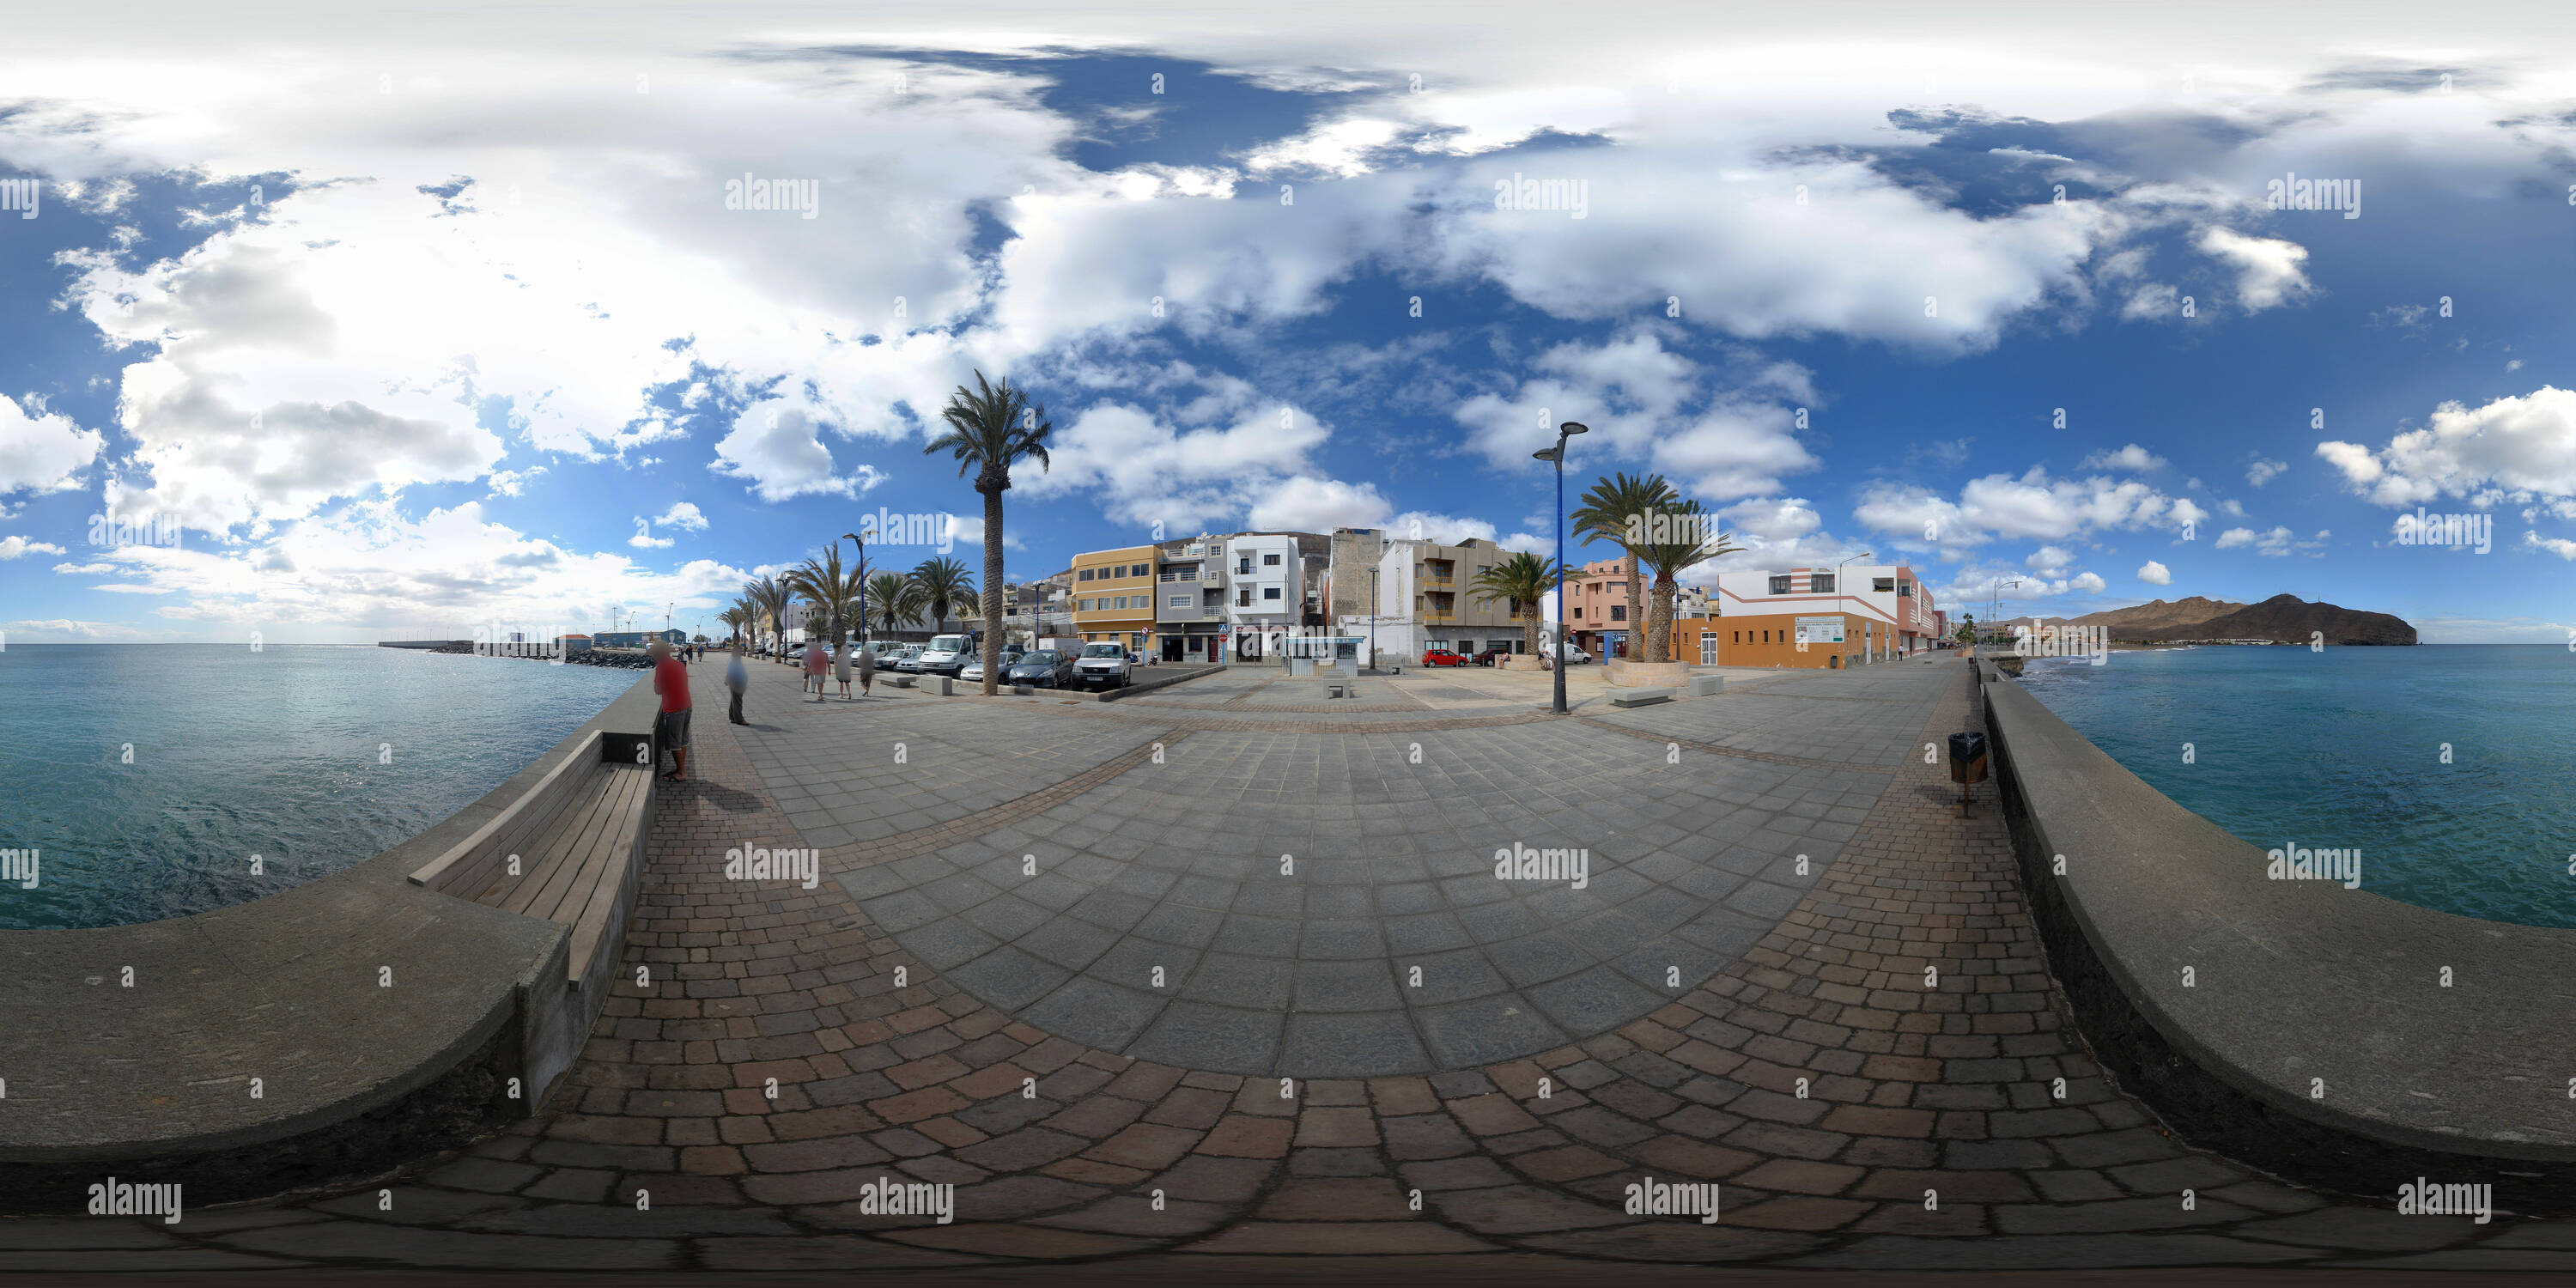 360 degree panoramic view of Gran Tarajal Strand